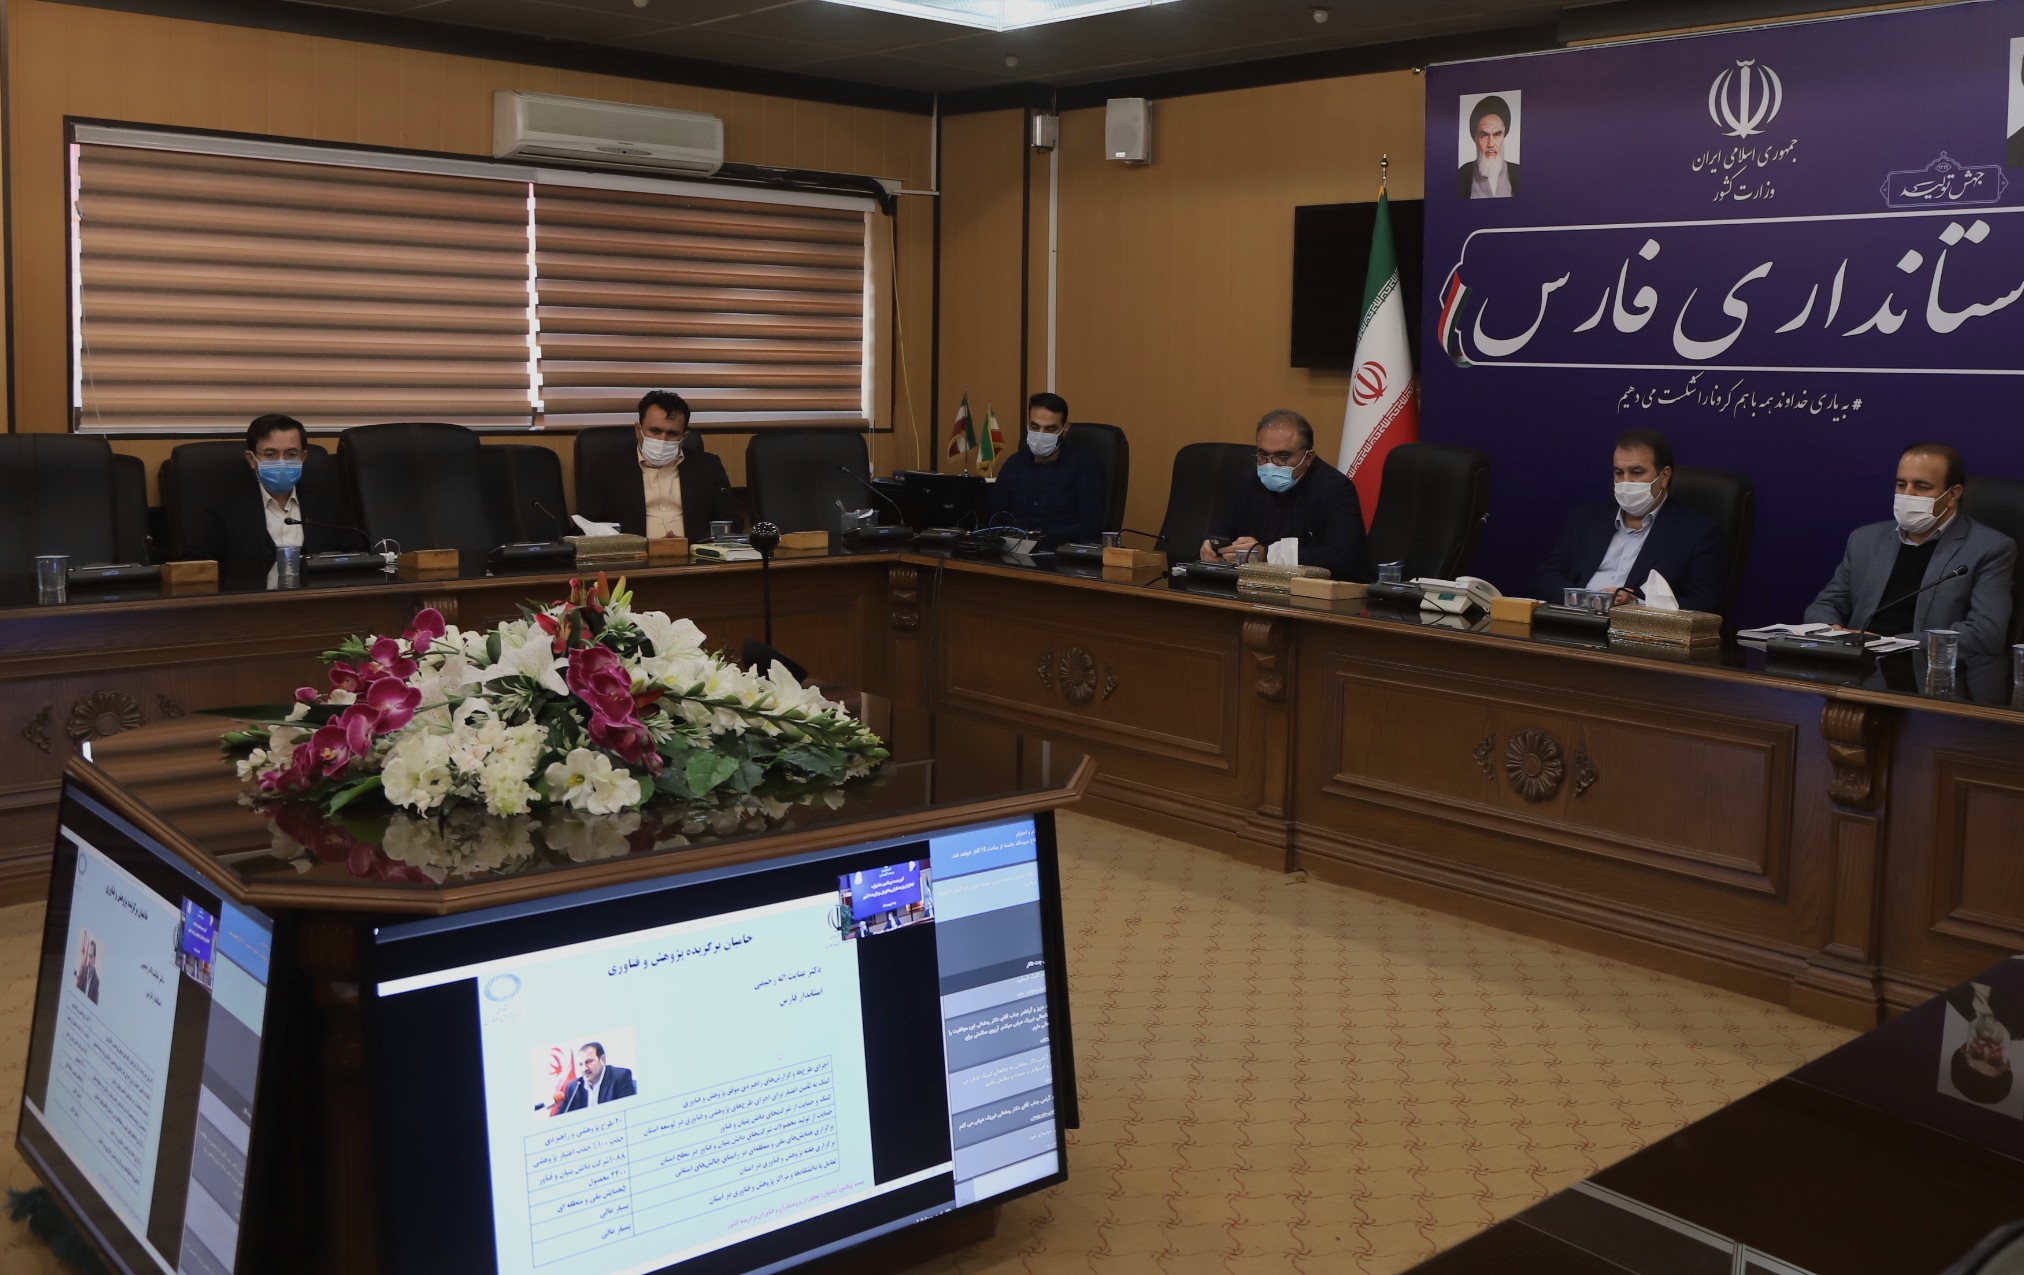 استان فارس برای پنجمین سال متوالی به عنوان استان برتر پژوهش و فناوری معرفی شد